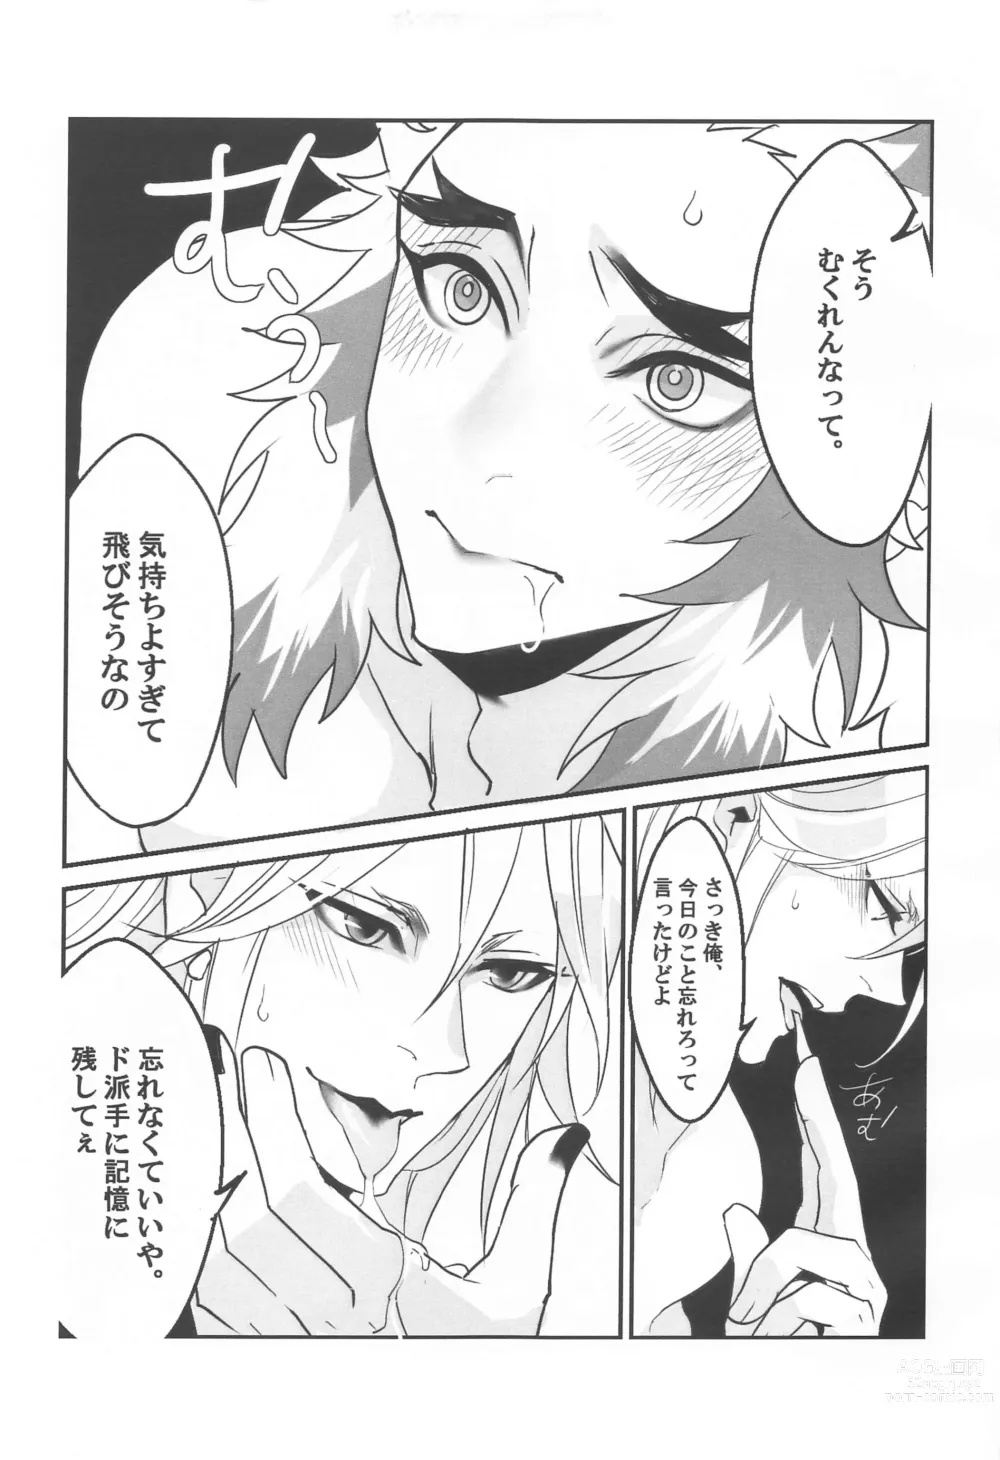 Page 12 of doujinshi ●● Shinai to Derarenai Heya